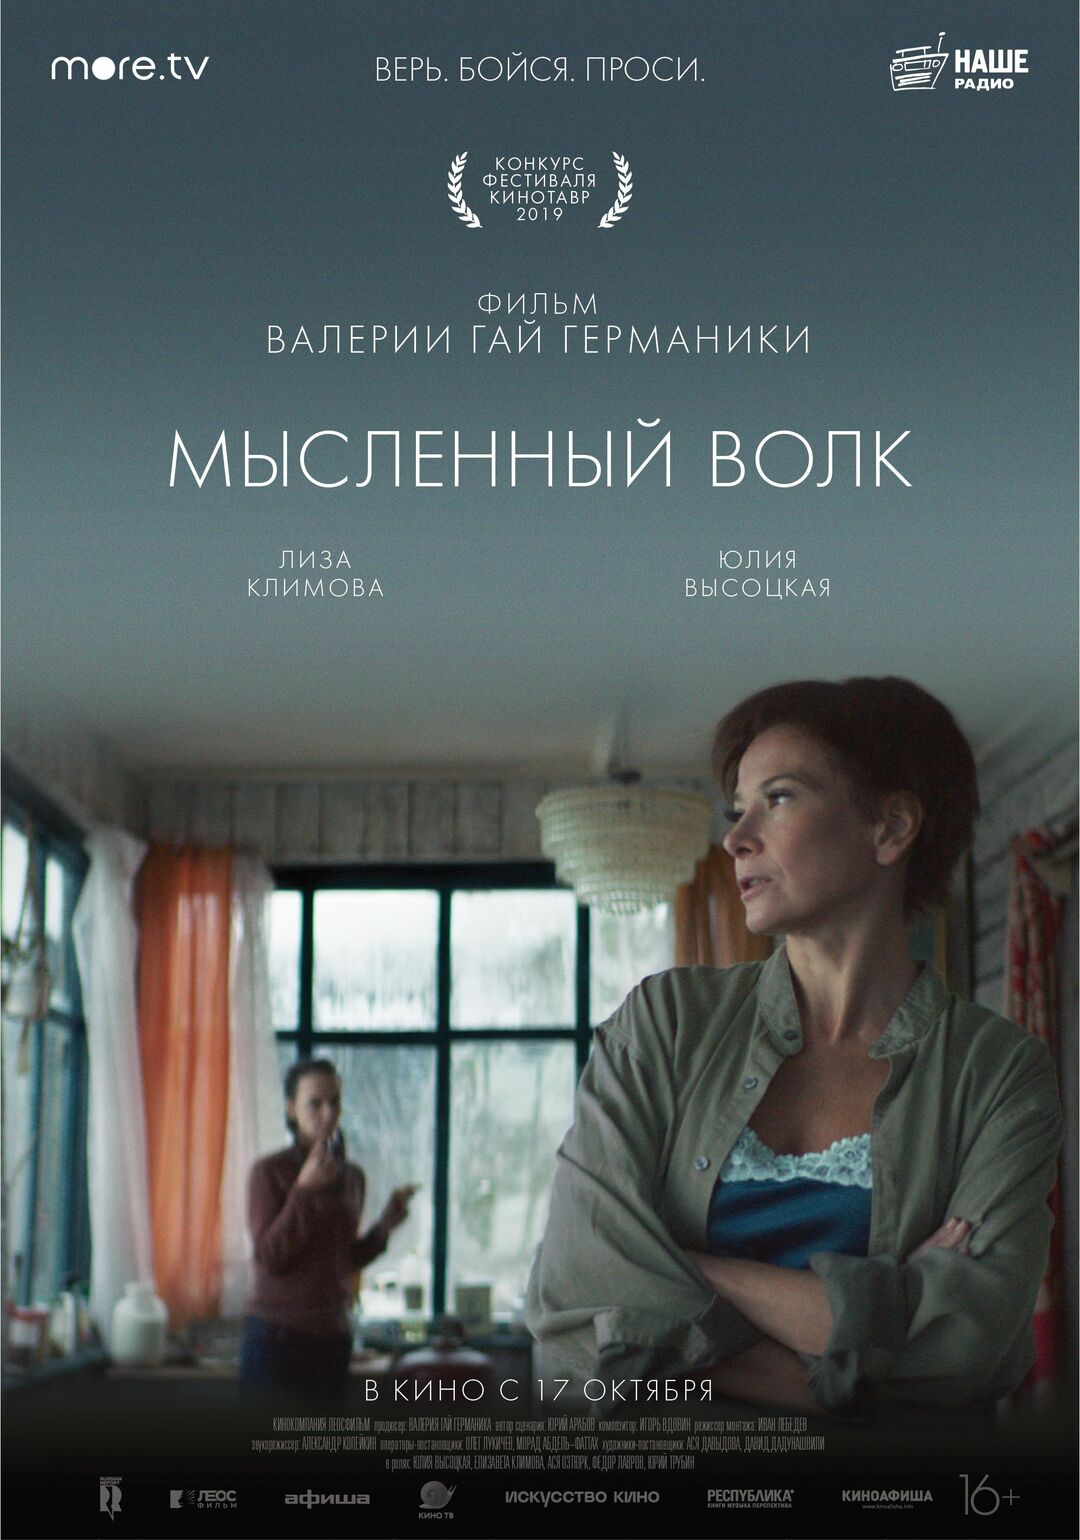 Любителям нетривиального кино можно посмотреть фильм Валерии Гай Германики. Российская премьера состоялась накануне